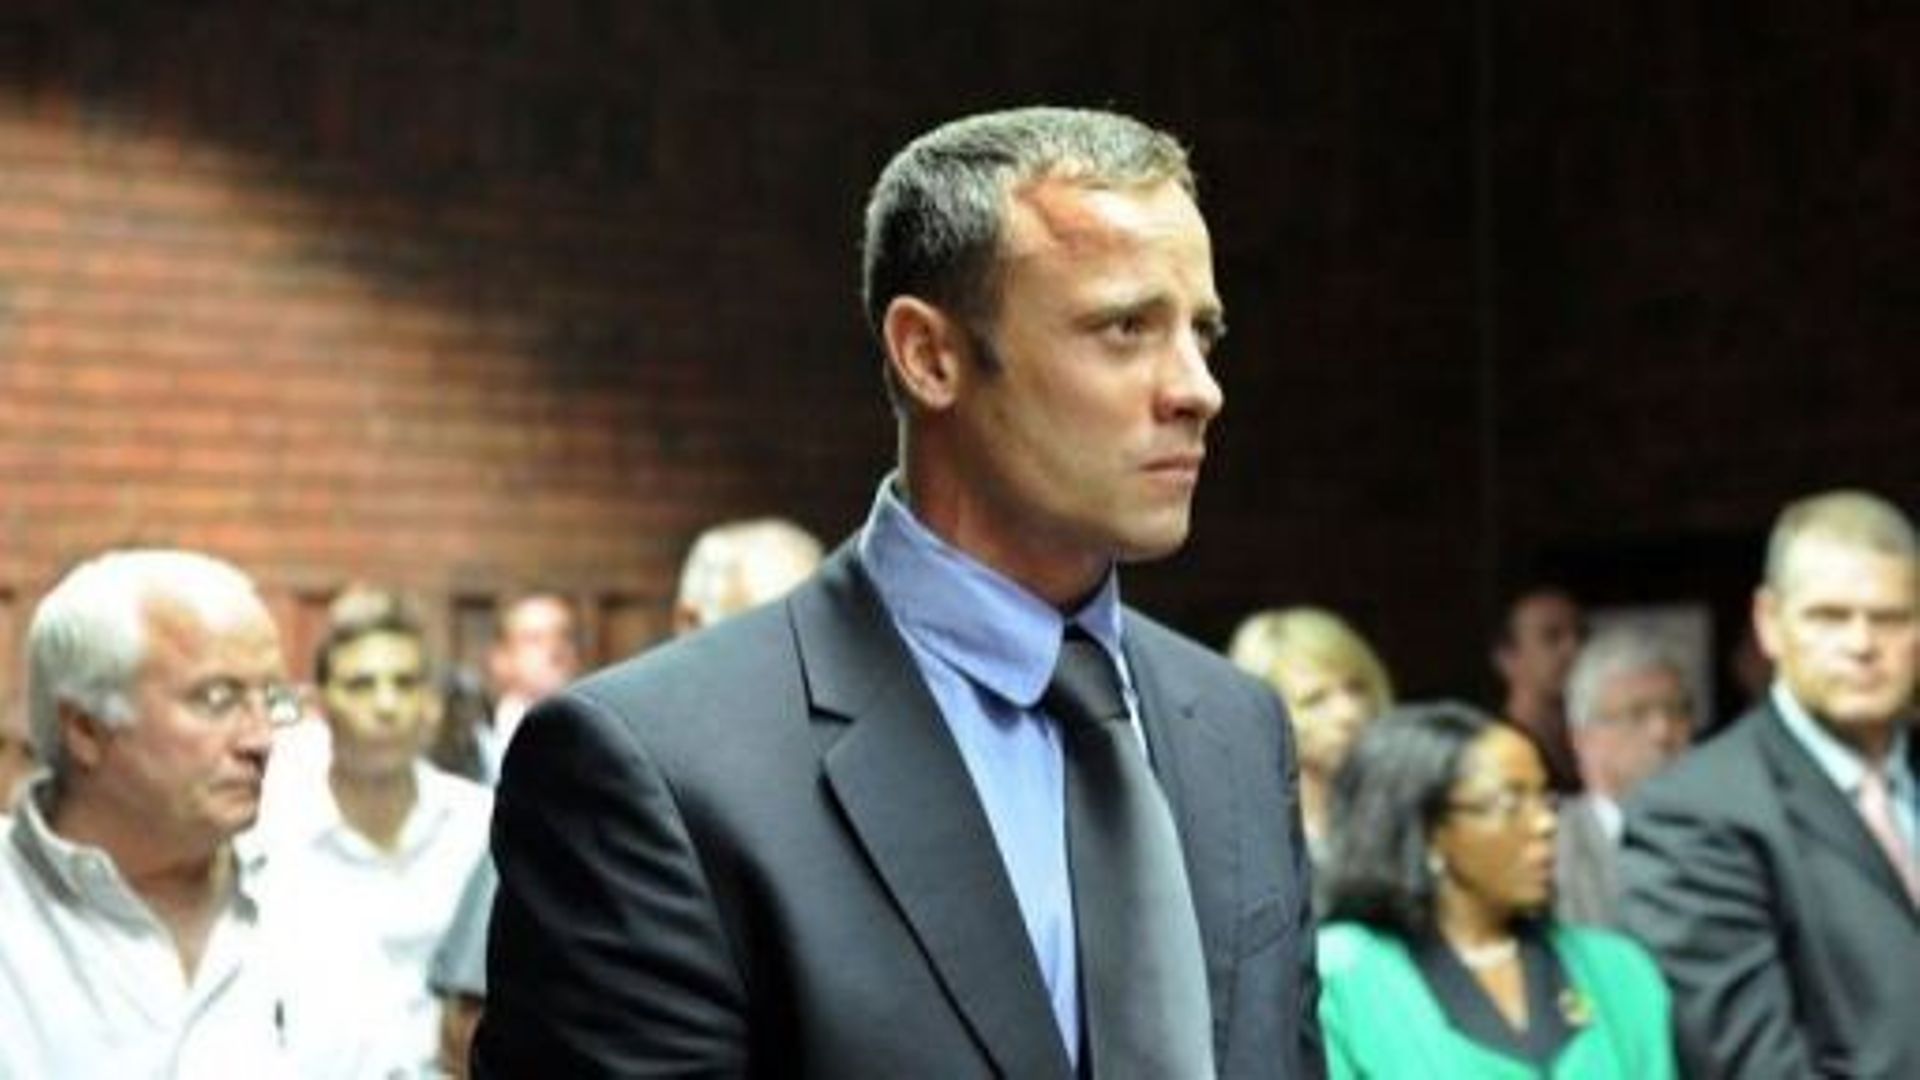 Oscar Pistorius, accusé de meurtre avec préméditation, au tribunal de Pretoria, le 19 février 2013